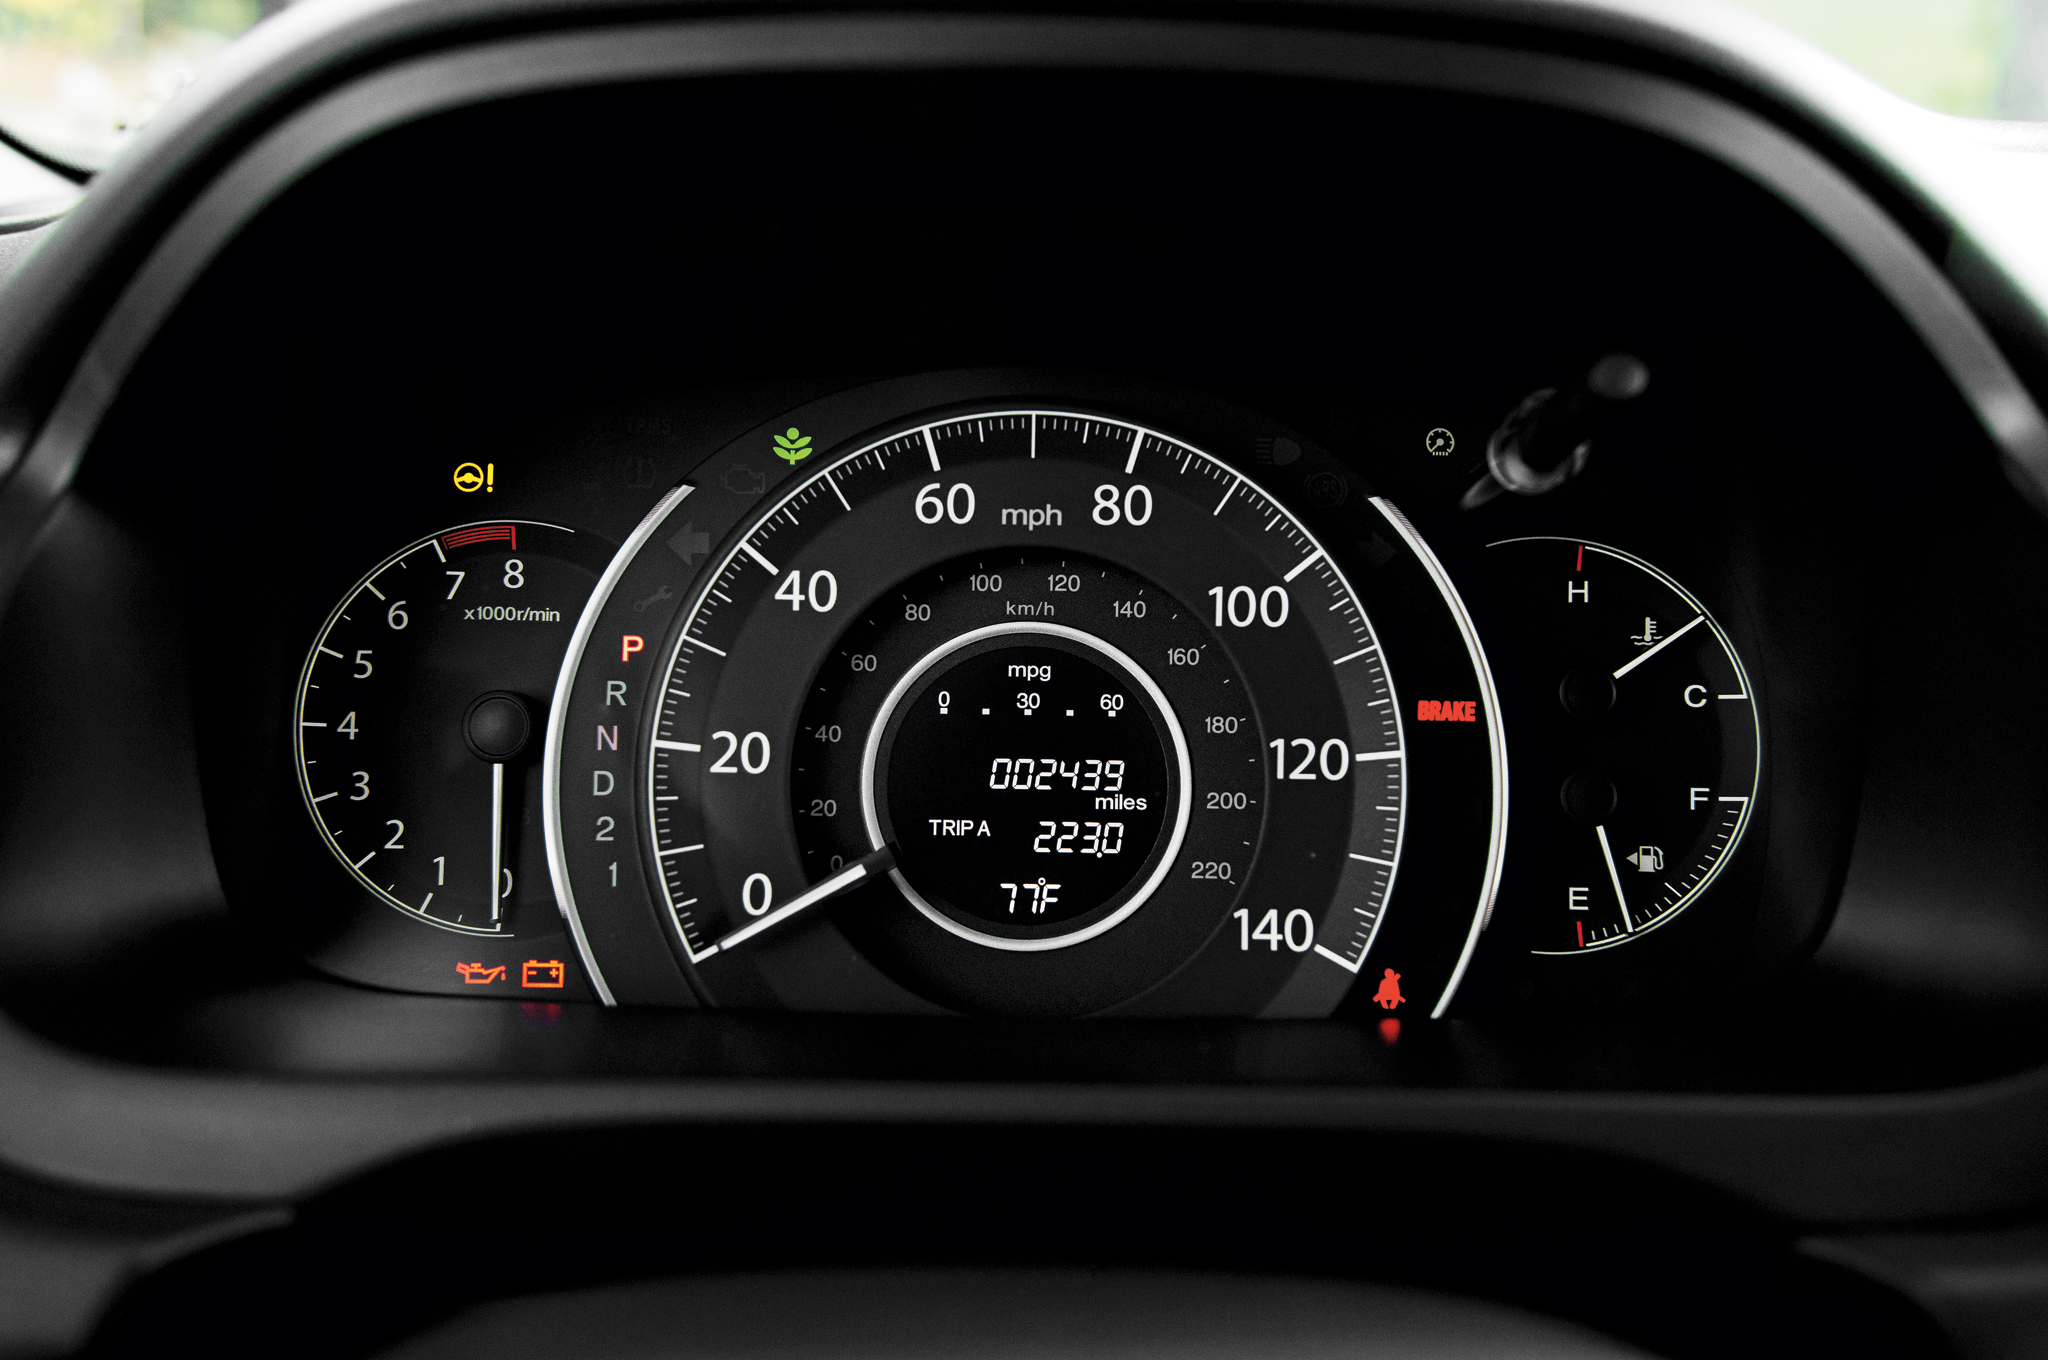 Đánh giá xe Honda CR-V 2013